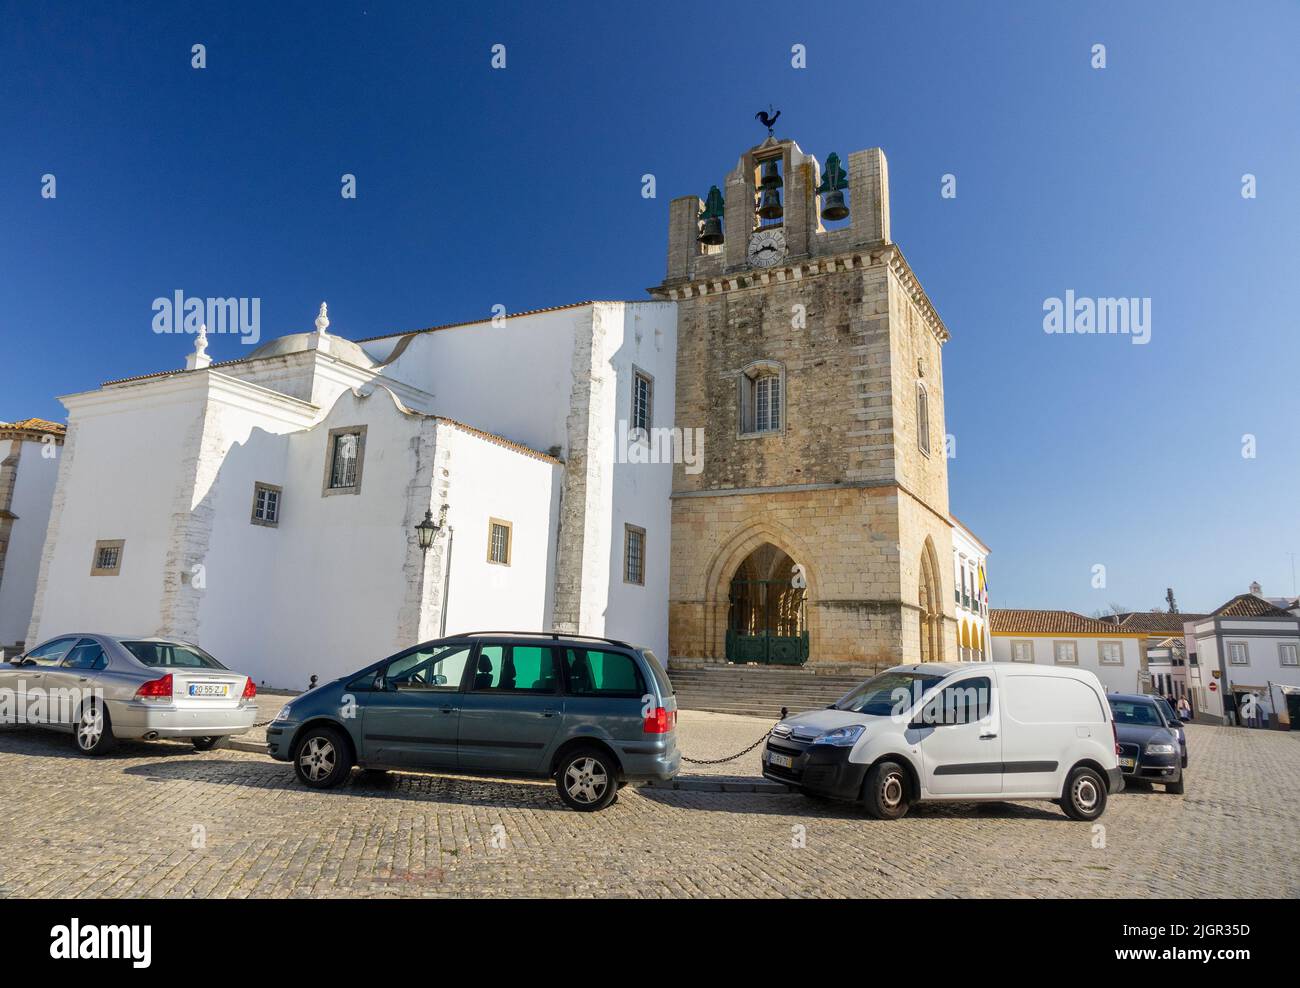 La Catedral de Santa María (Sé de Faro), Torre del Reloj de Campanario La Catedral de Faro es un Monumento Nacional de Portugal, la Catedral de Faro Foto de stock